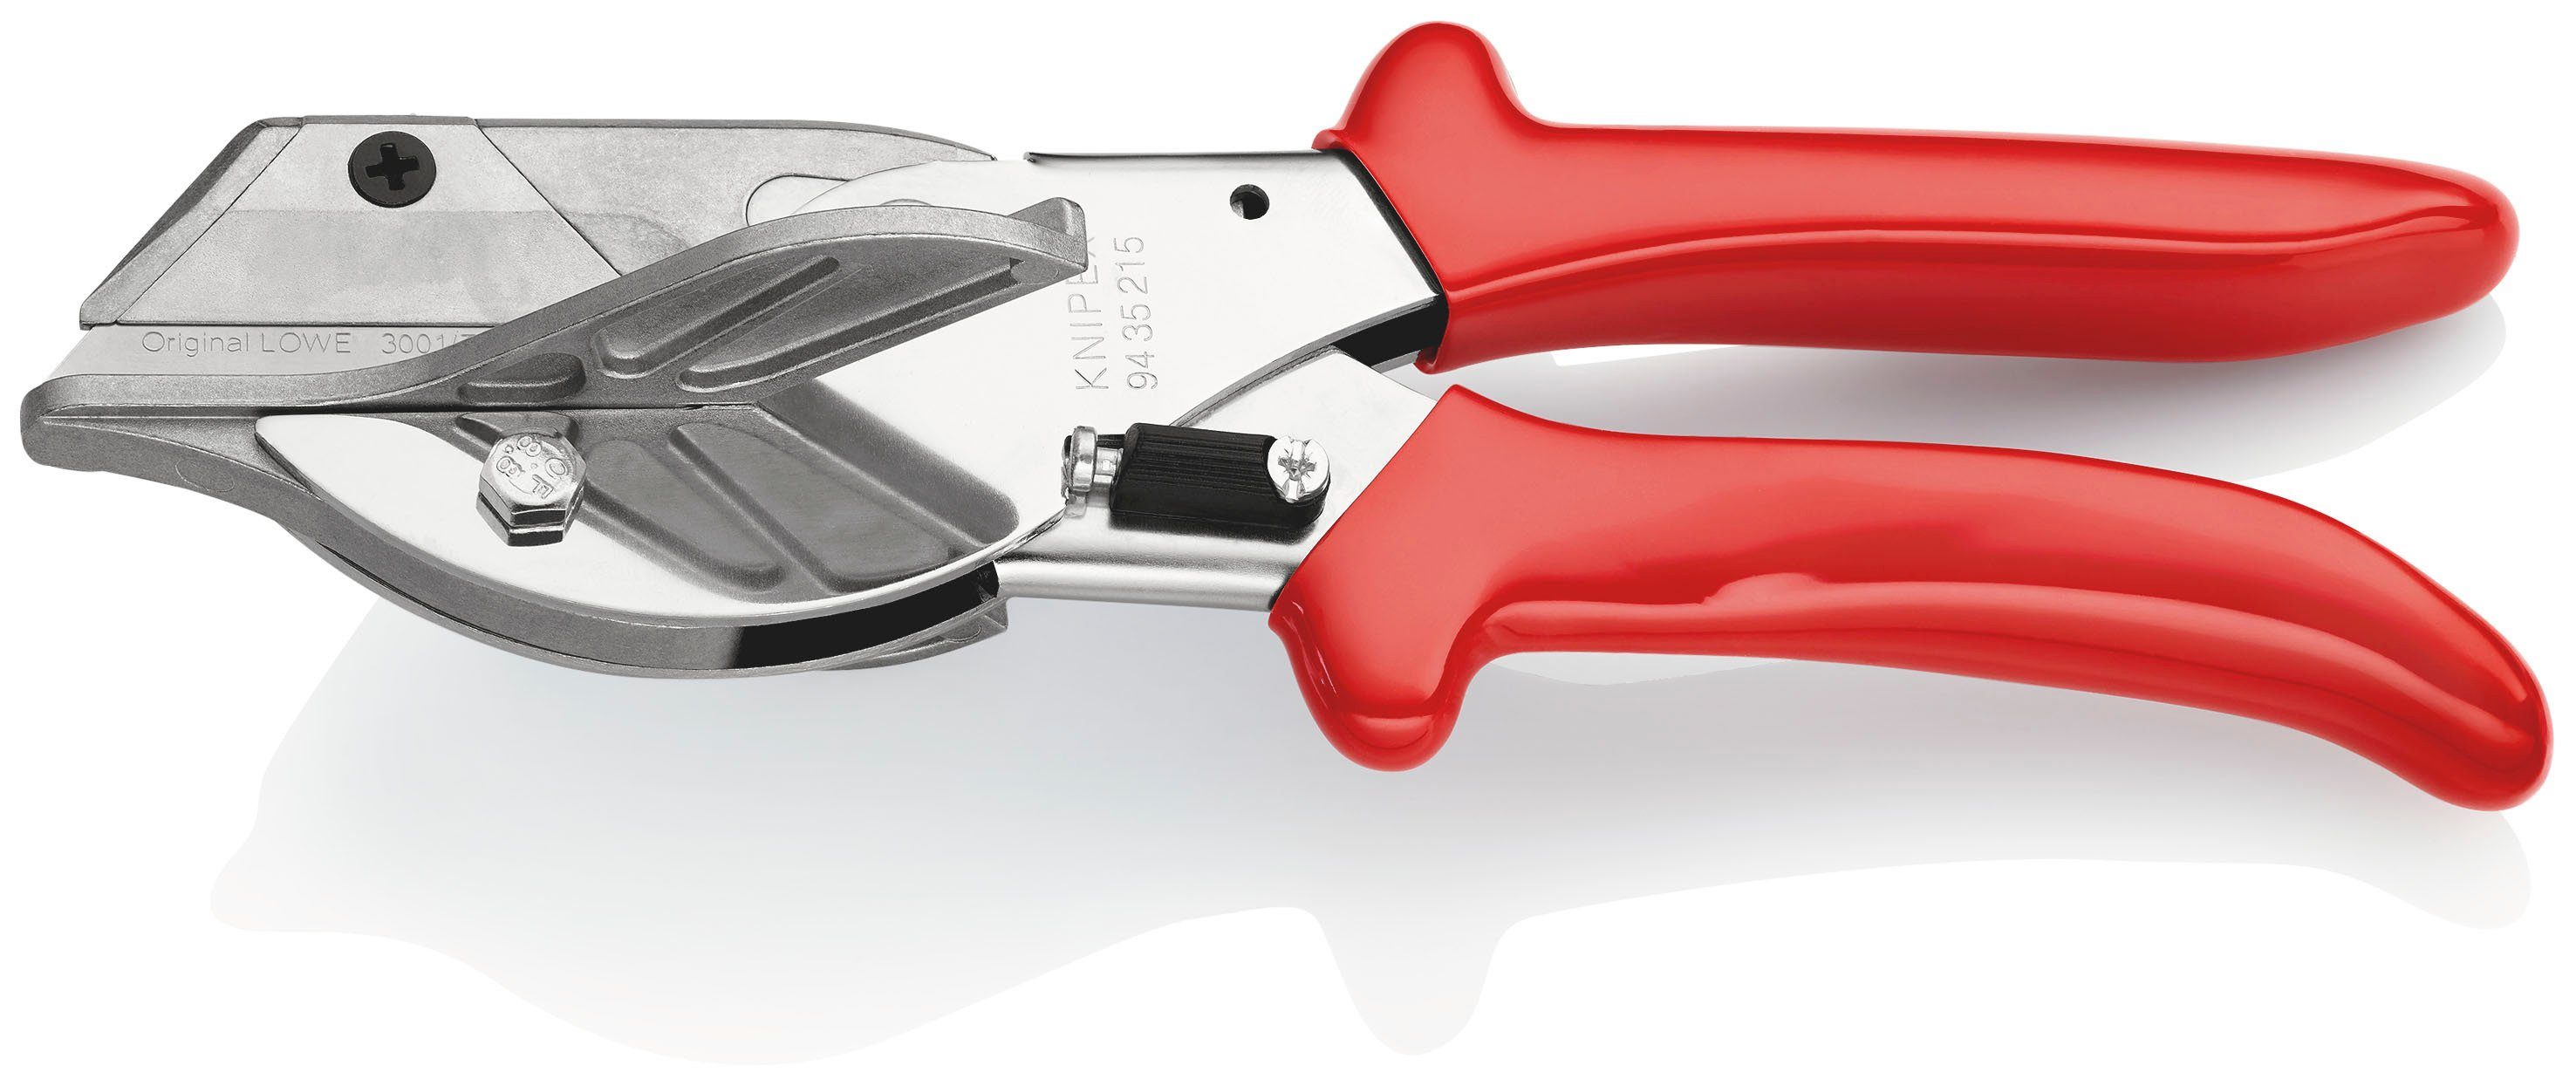 Knipex Elektrikerschere 94 35 215 und EAN 215 Kunststoff- Gehrungsschere für Kunststoff-Hüllen mit verchromt, mm Gummiprofile